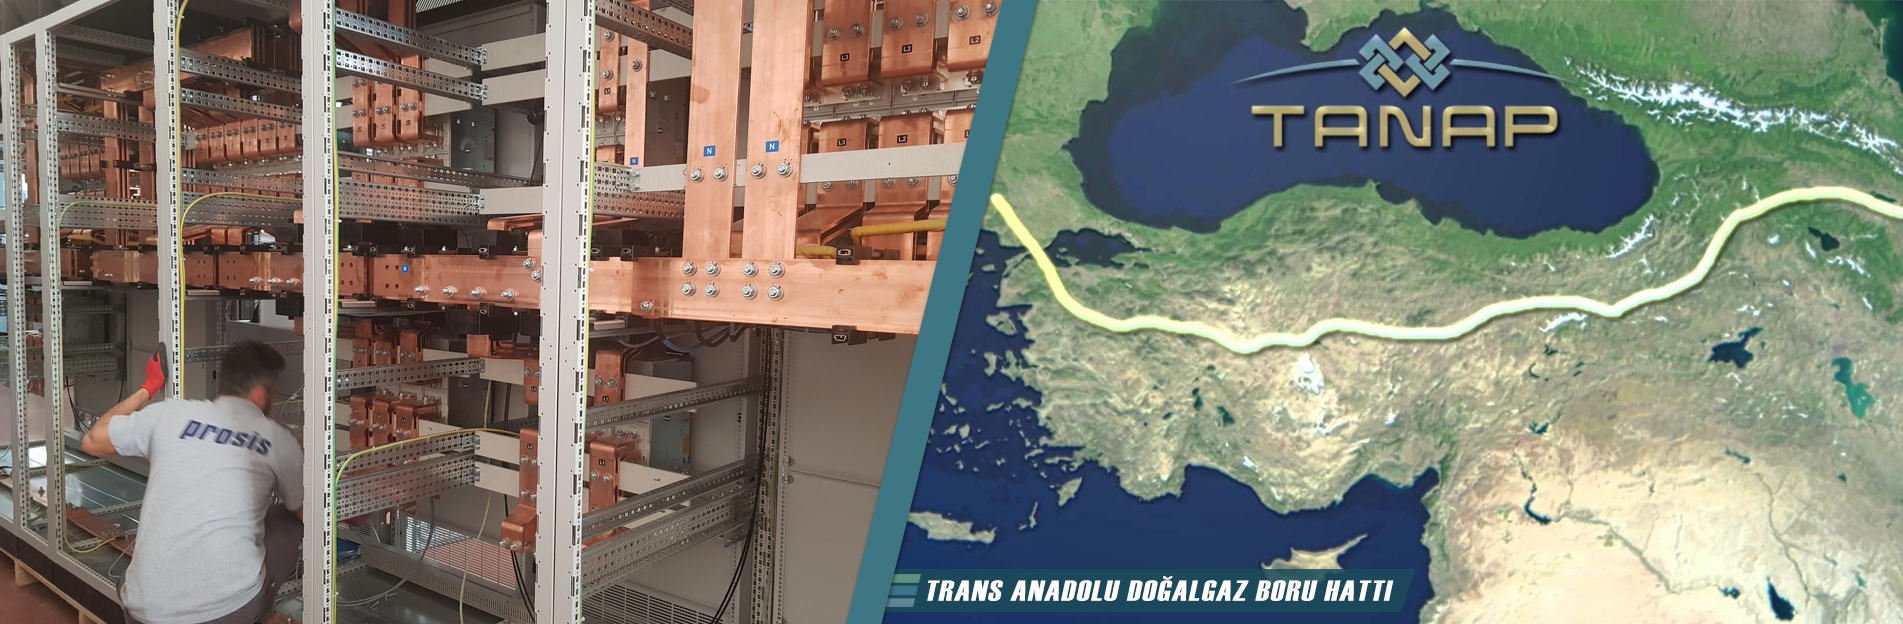 Trans Anadolu Doğalgaz Boru Hattı Panoları - Prosis